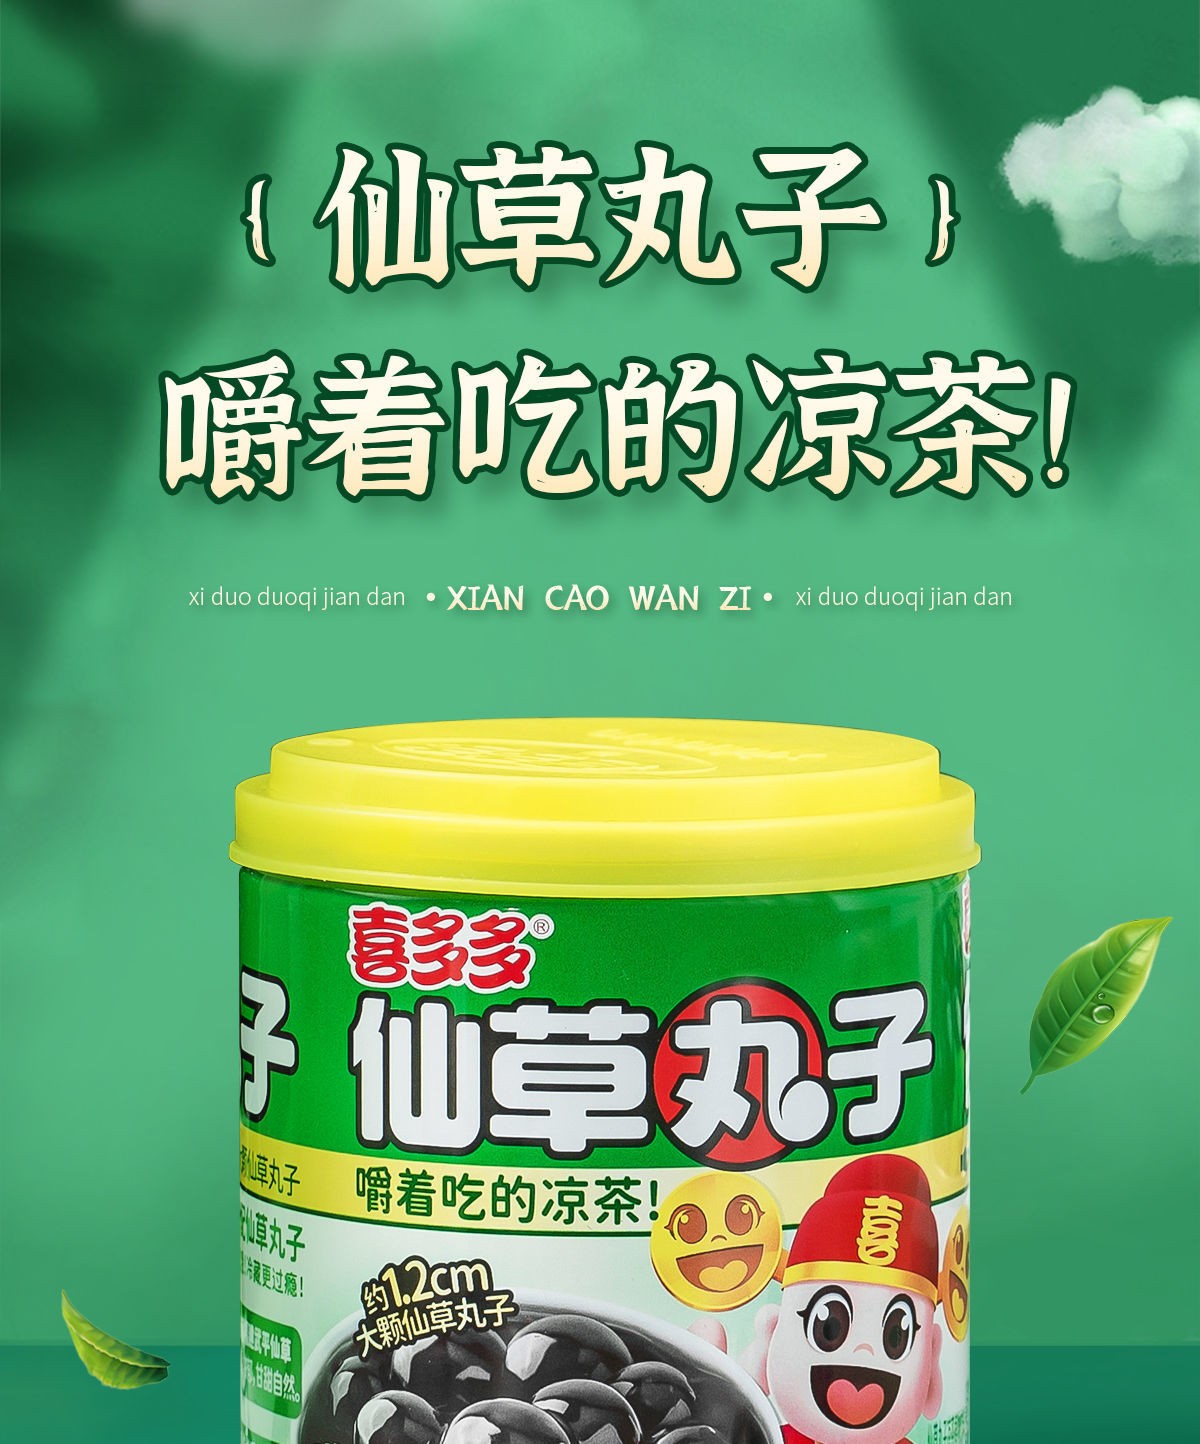 喜多多 仙草丸子清凉凉茶嚼着吃的凉茶0防腐剂0食品添加剂0香精 10罐